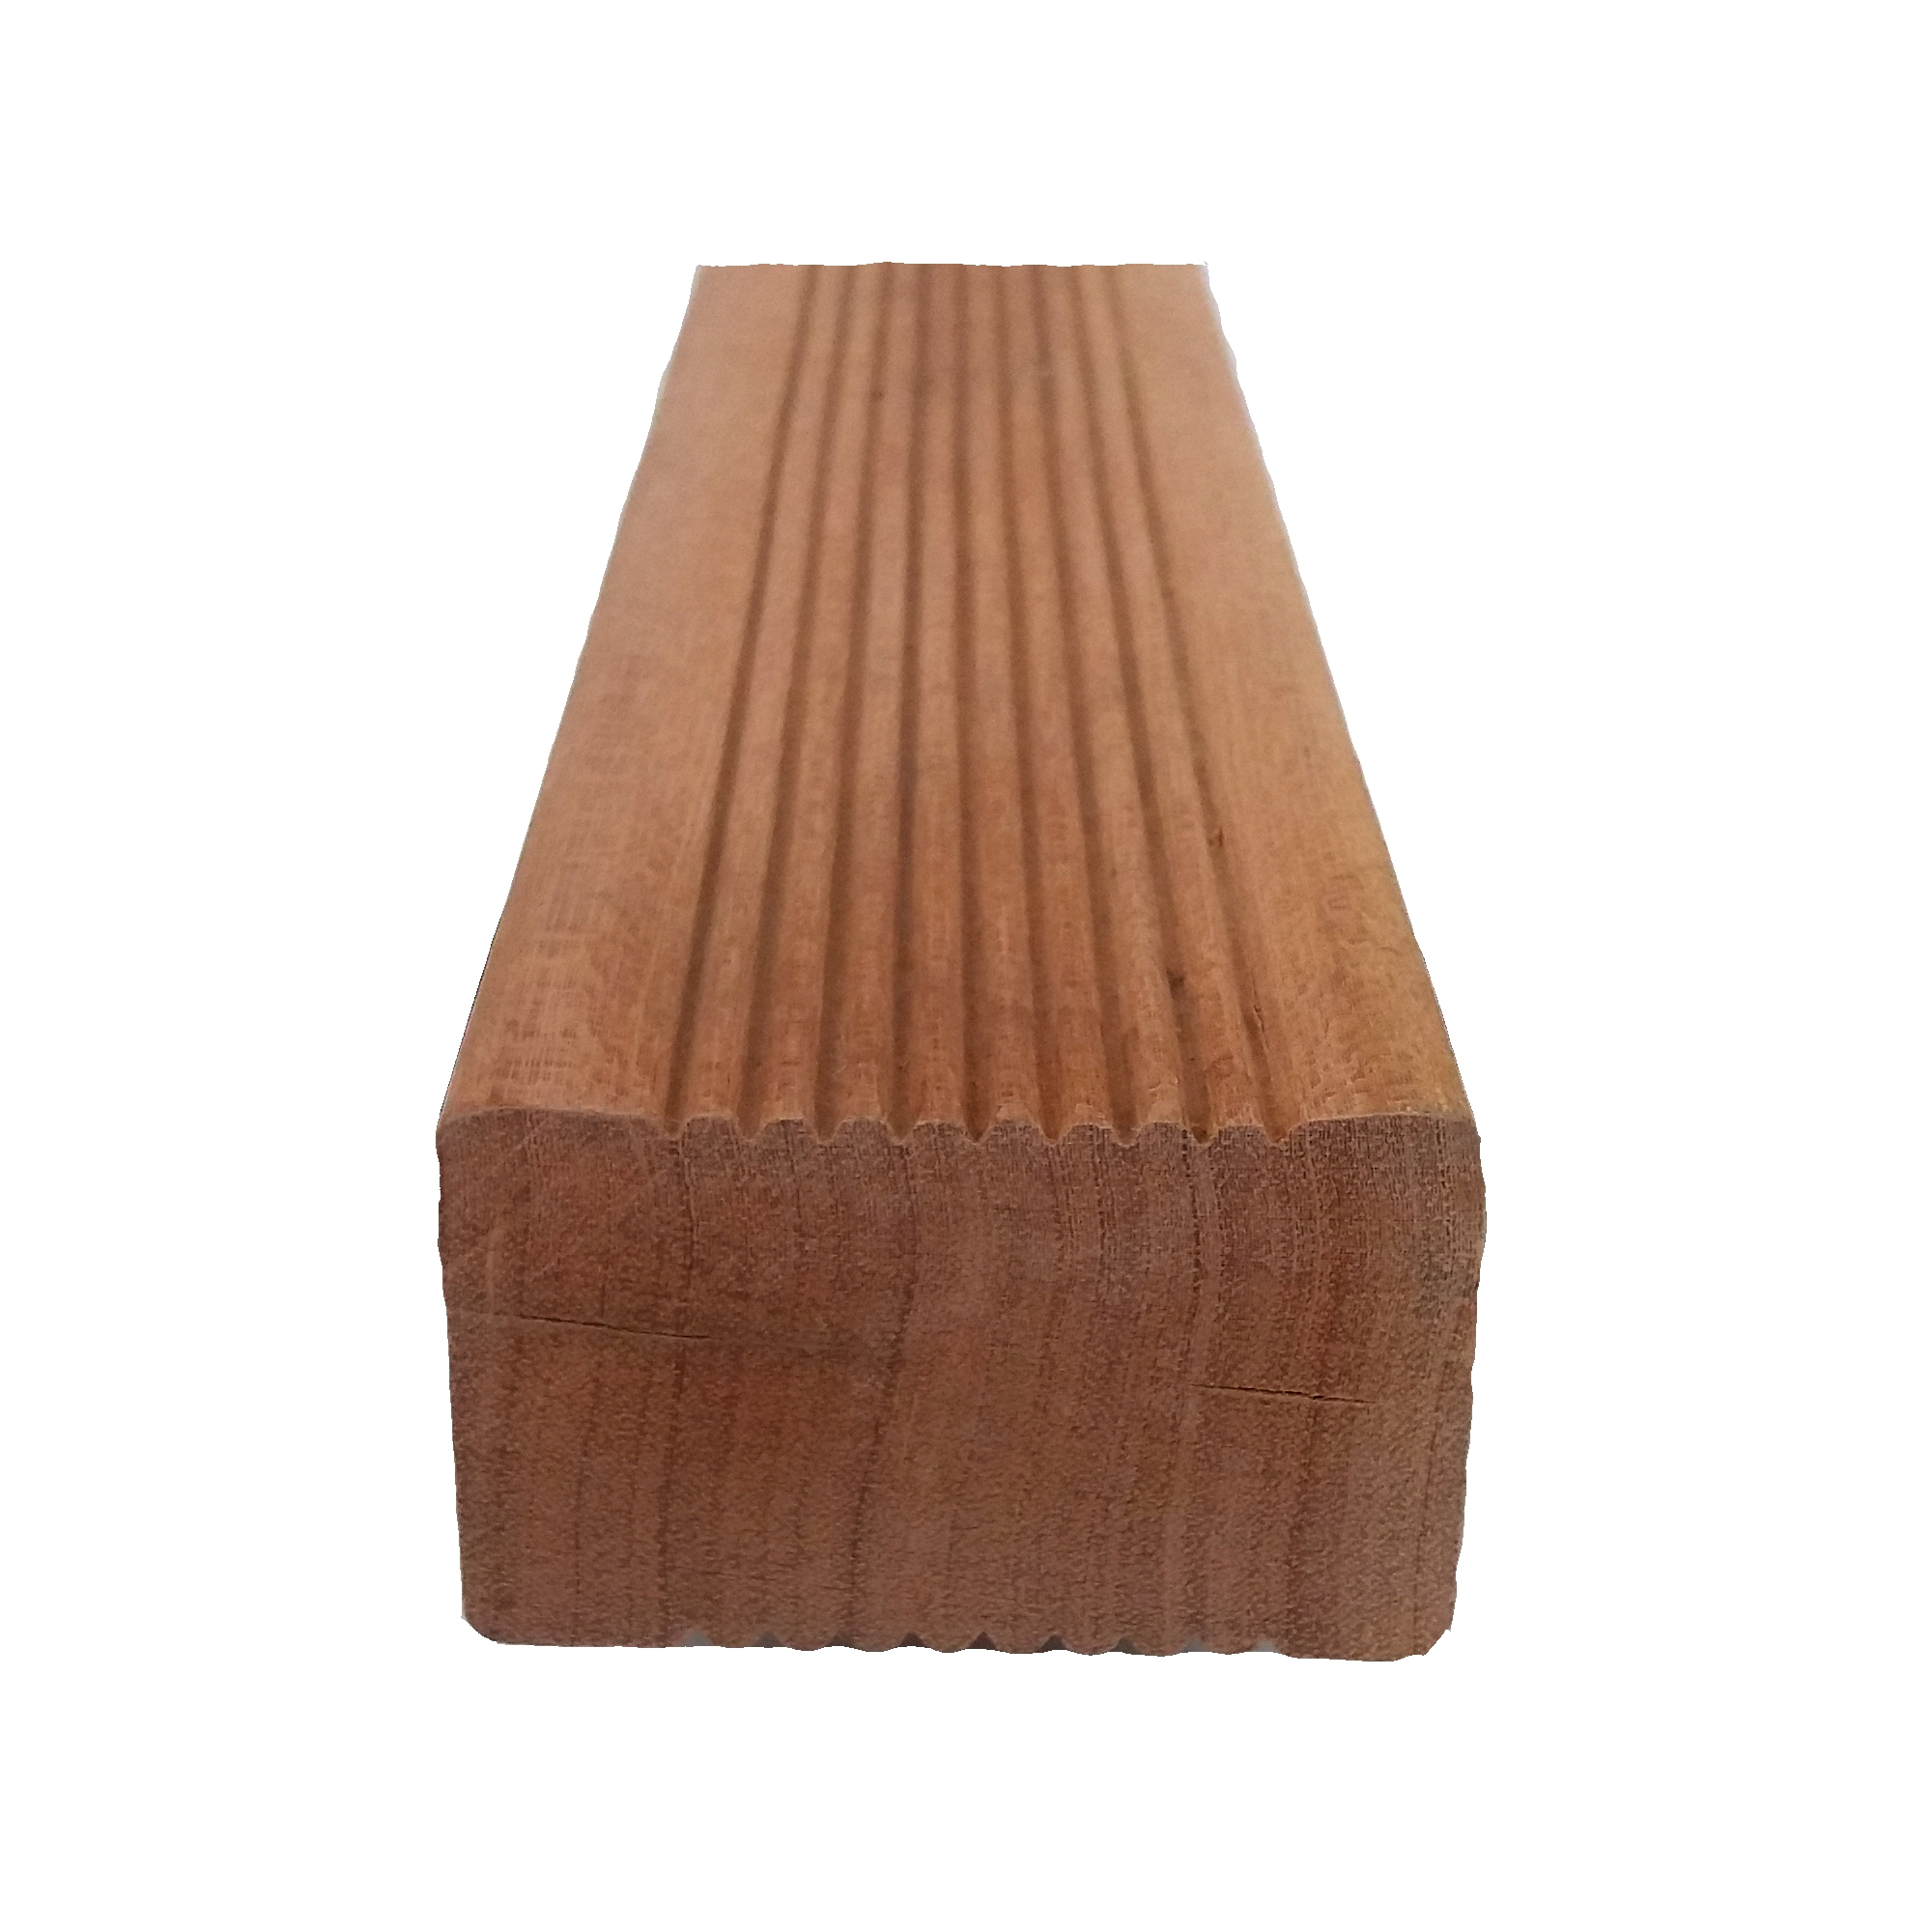 Hranol pod terasy AU-MEX exotické dřevo 45×70×1 520 mm